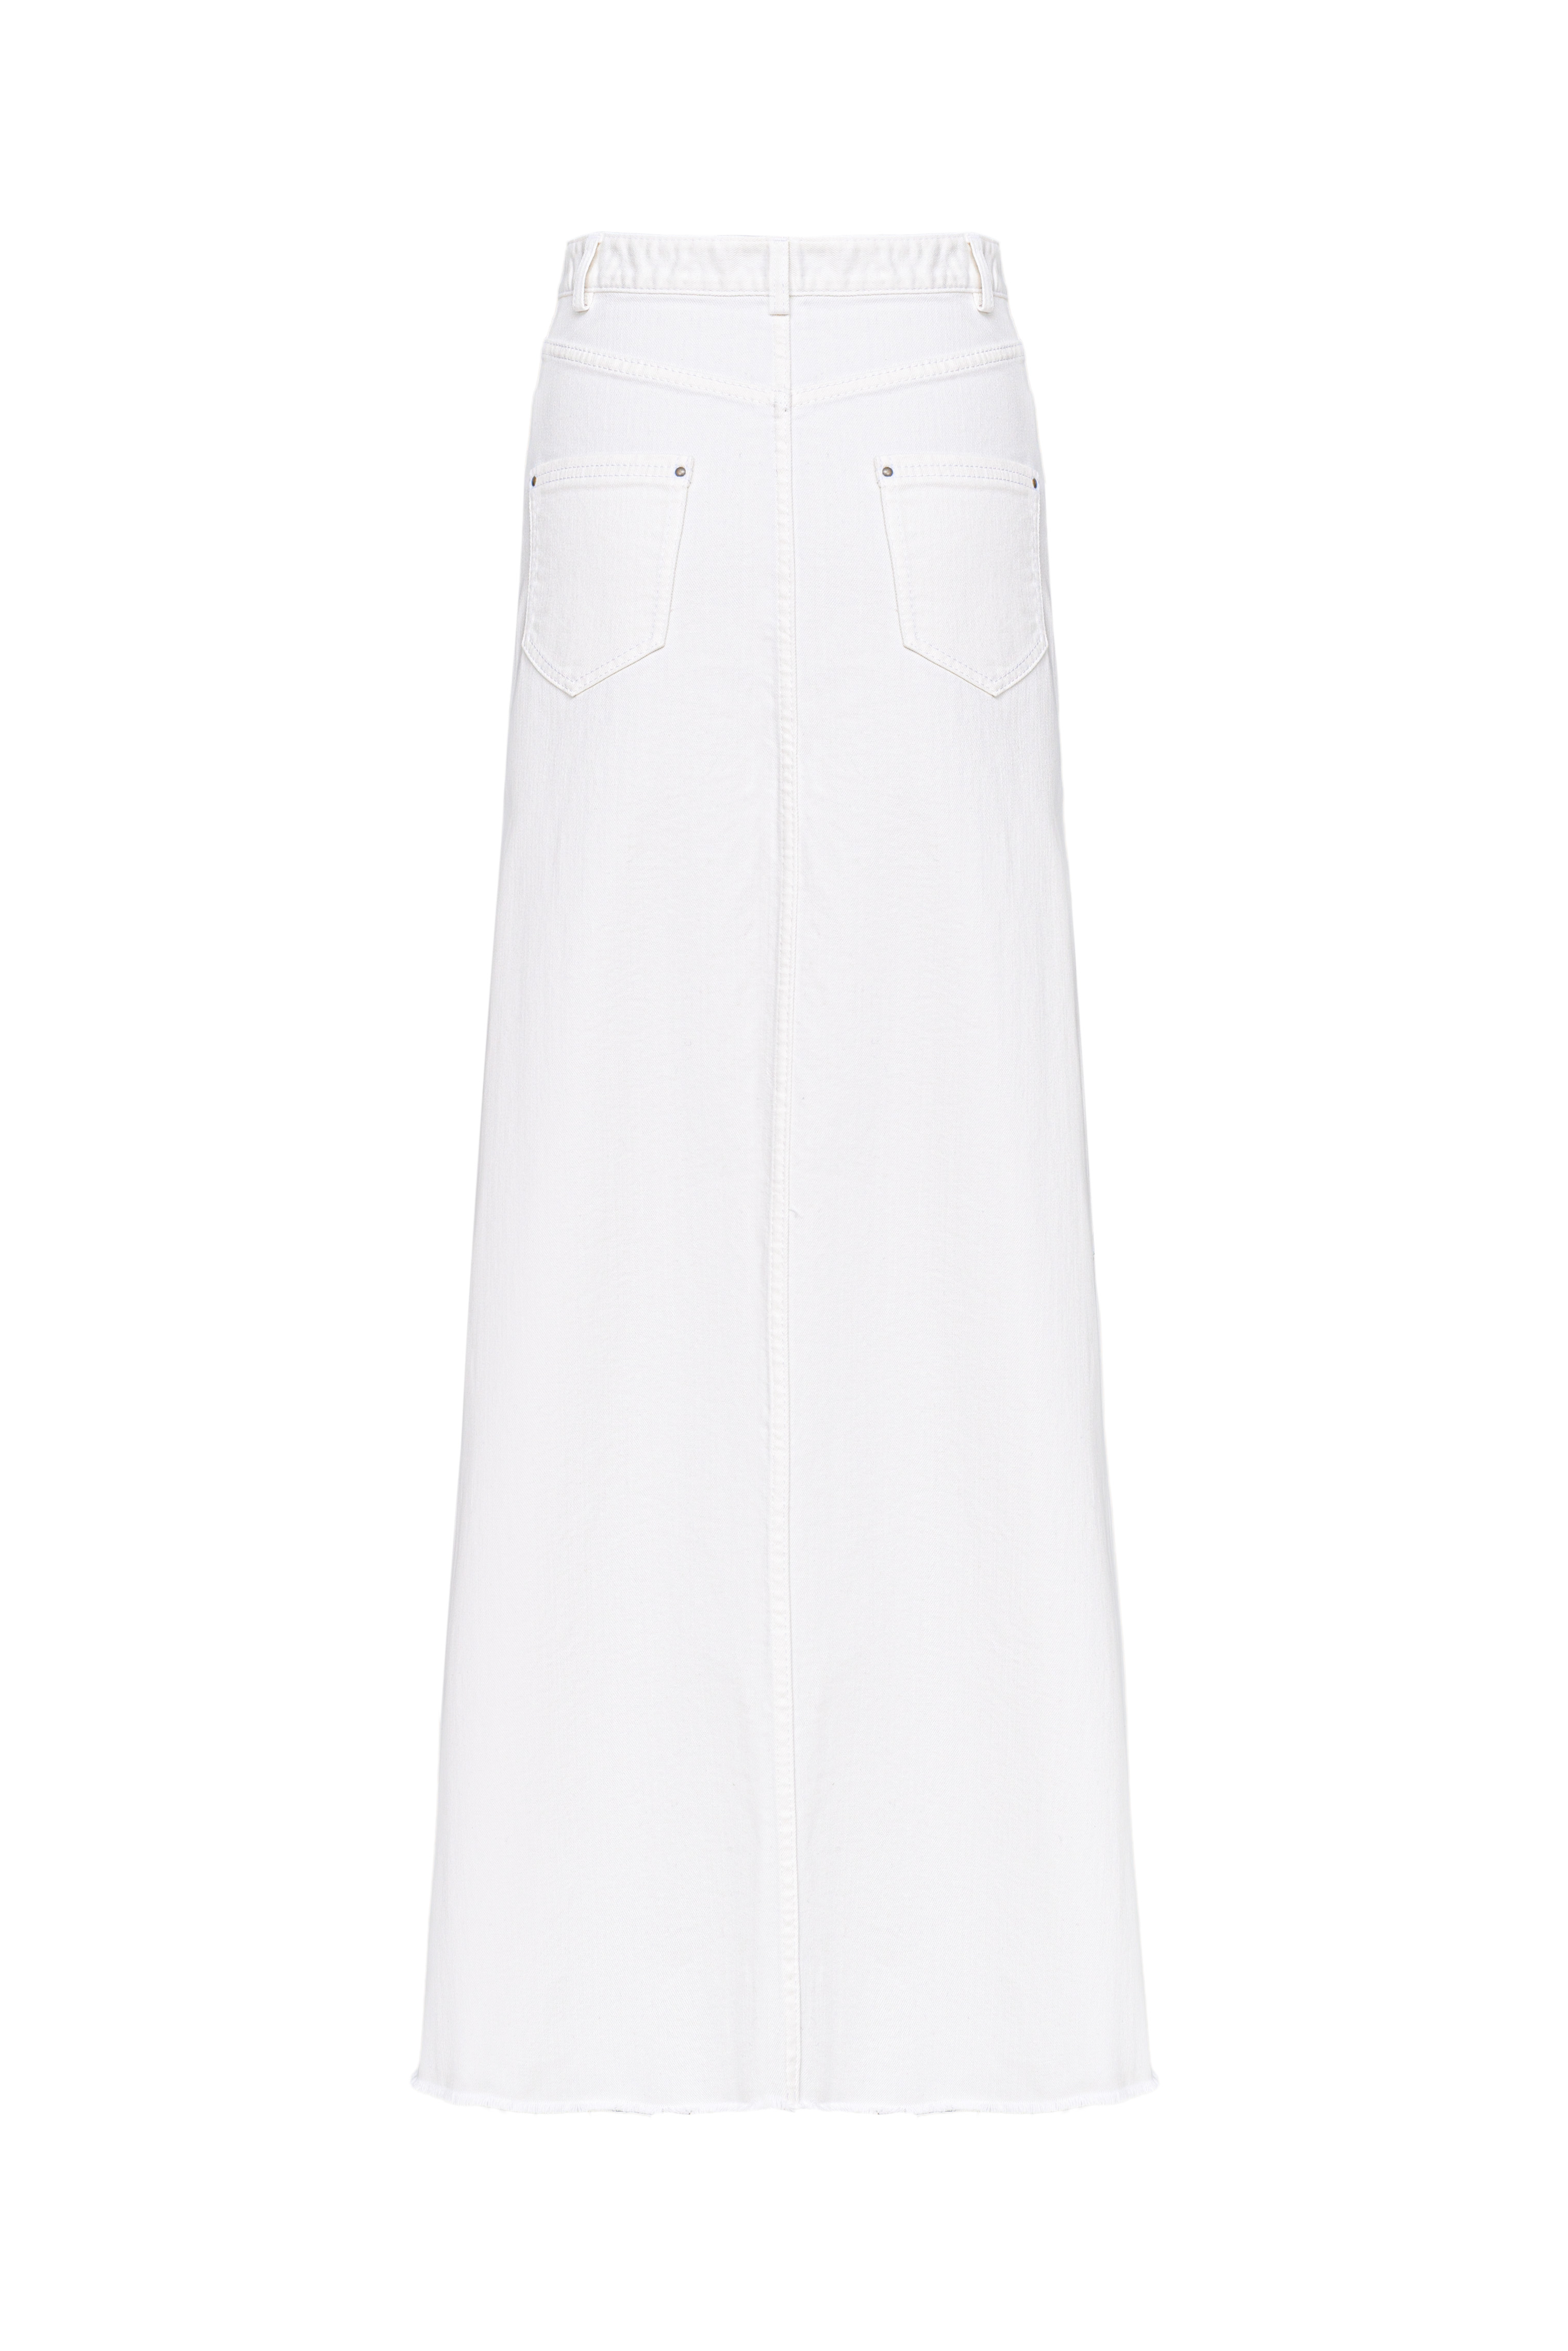 Skirt 4635-02 White from BRUSNiKA